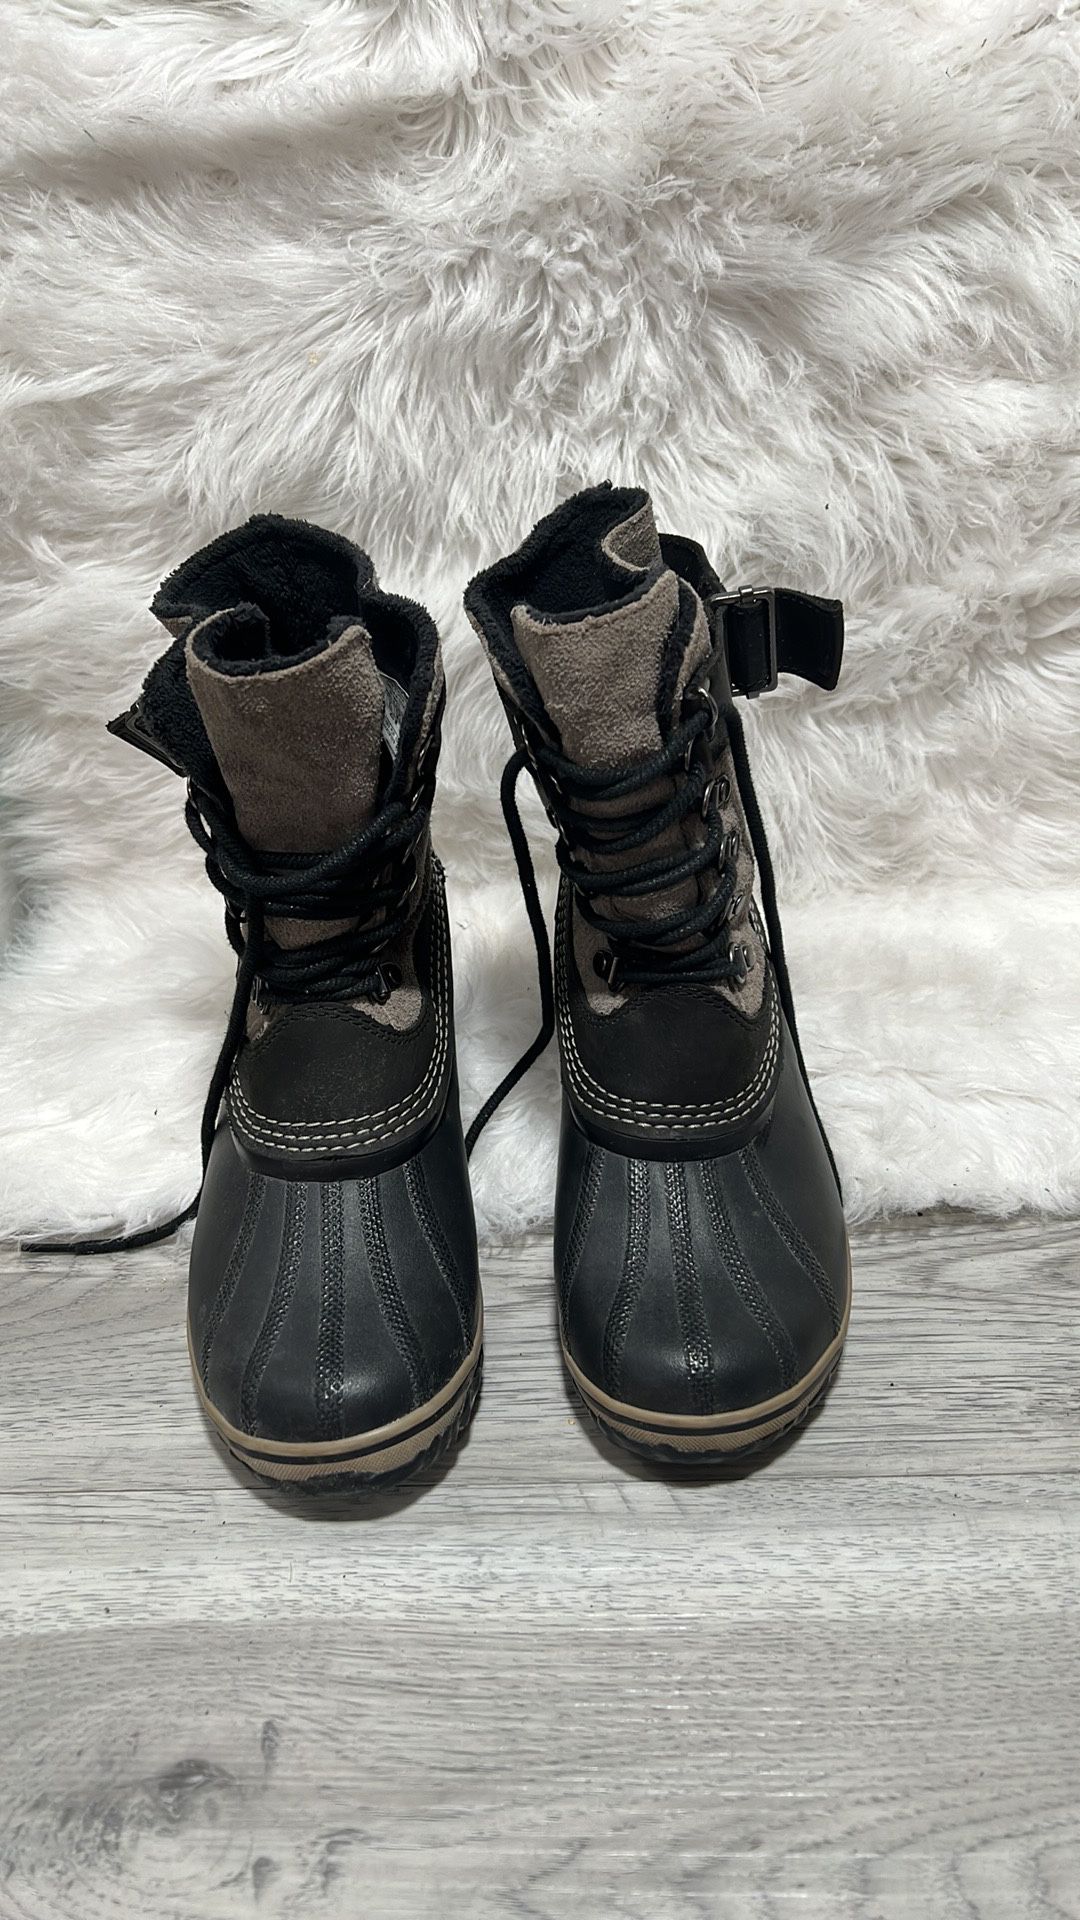 Sorel Fancy Lace II Womens Black Gray Suede Waterproof Winter Boot Size 8.5 